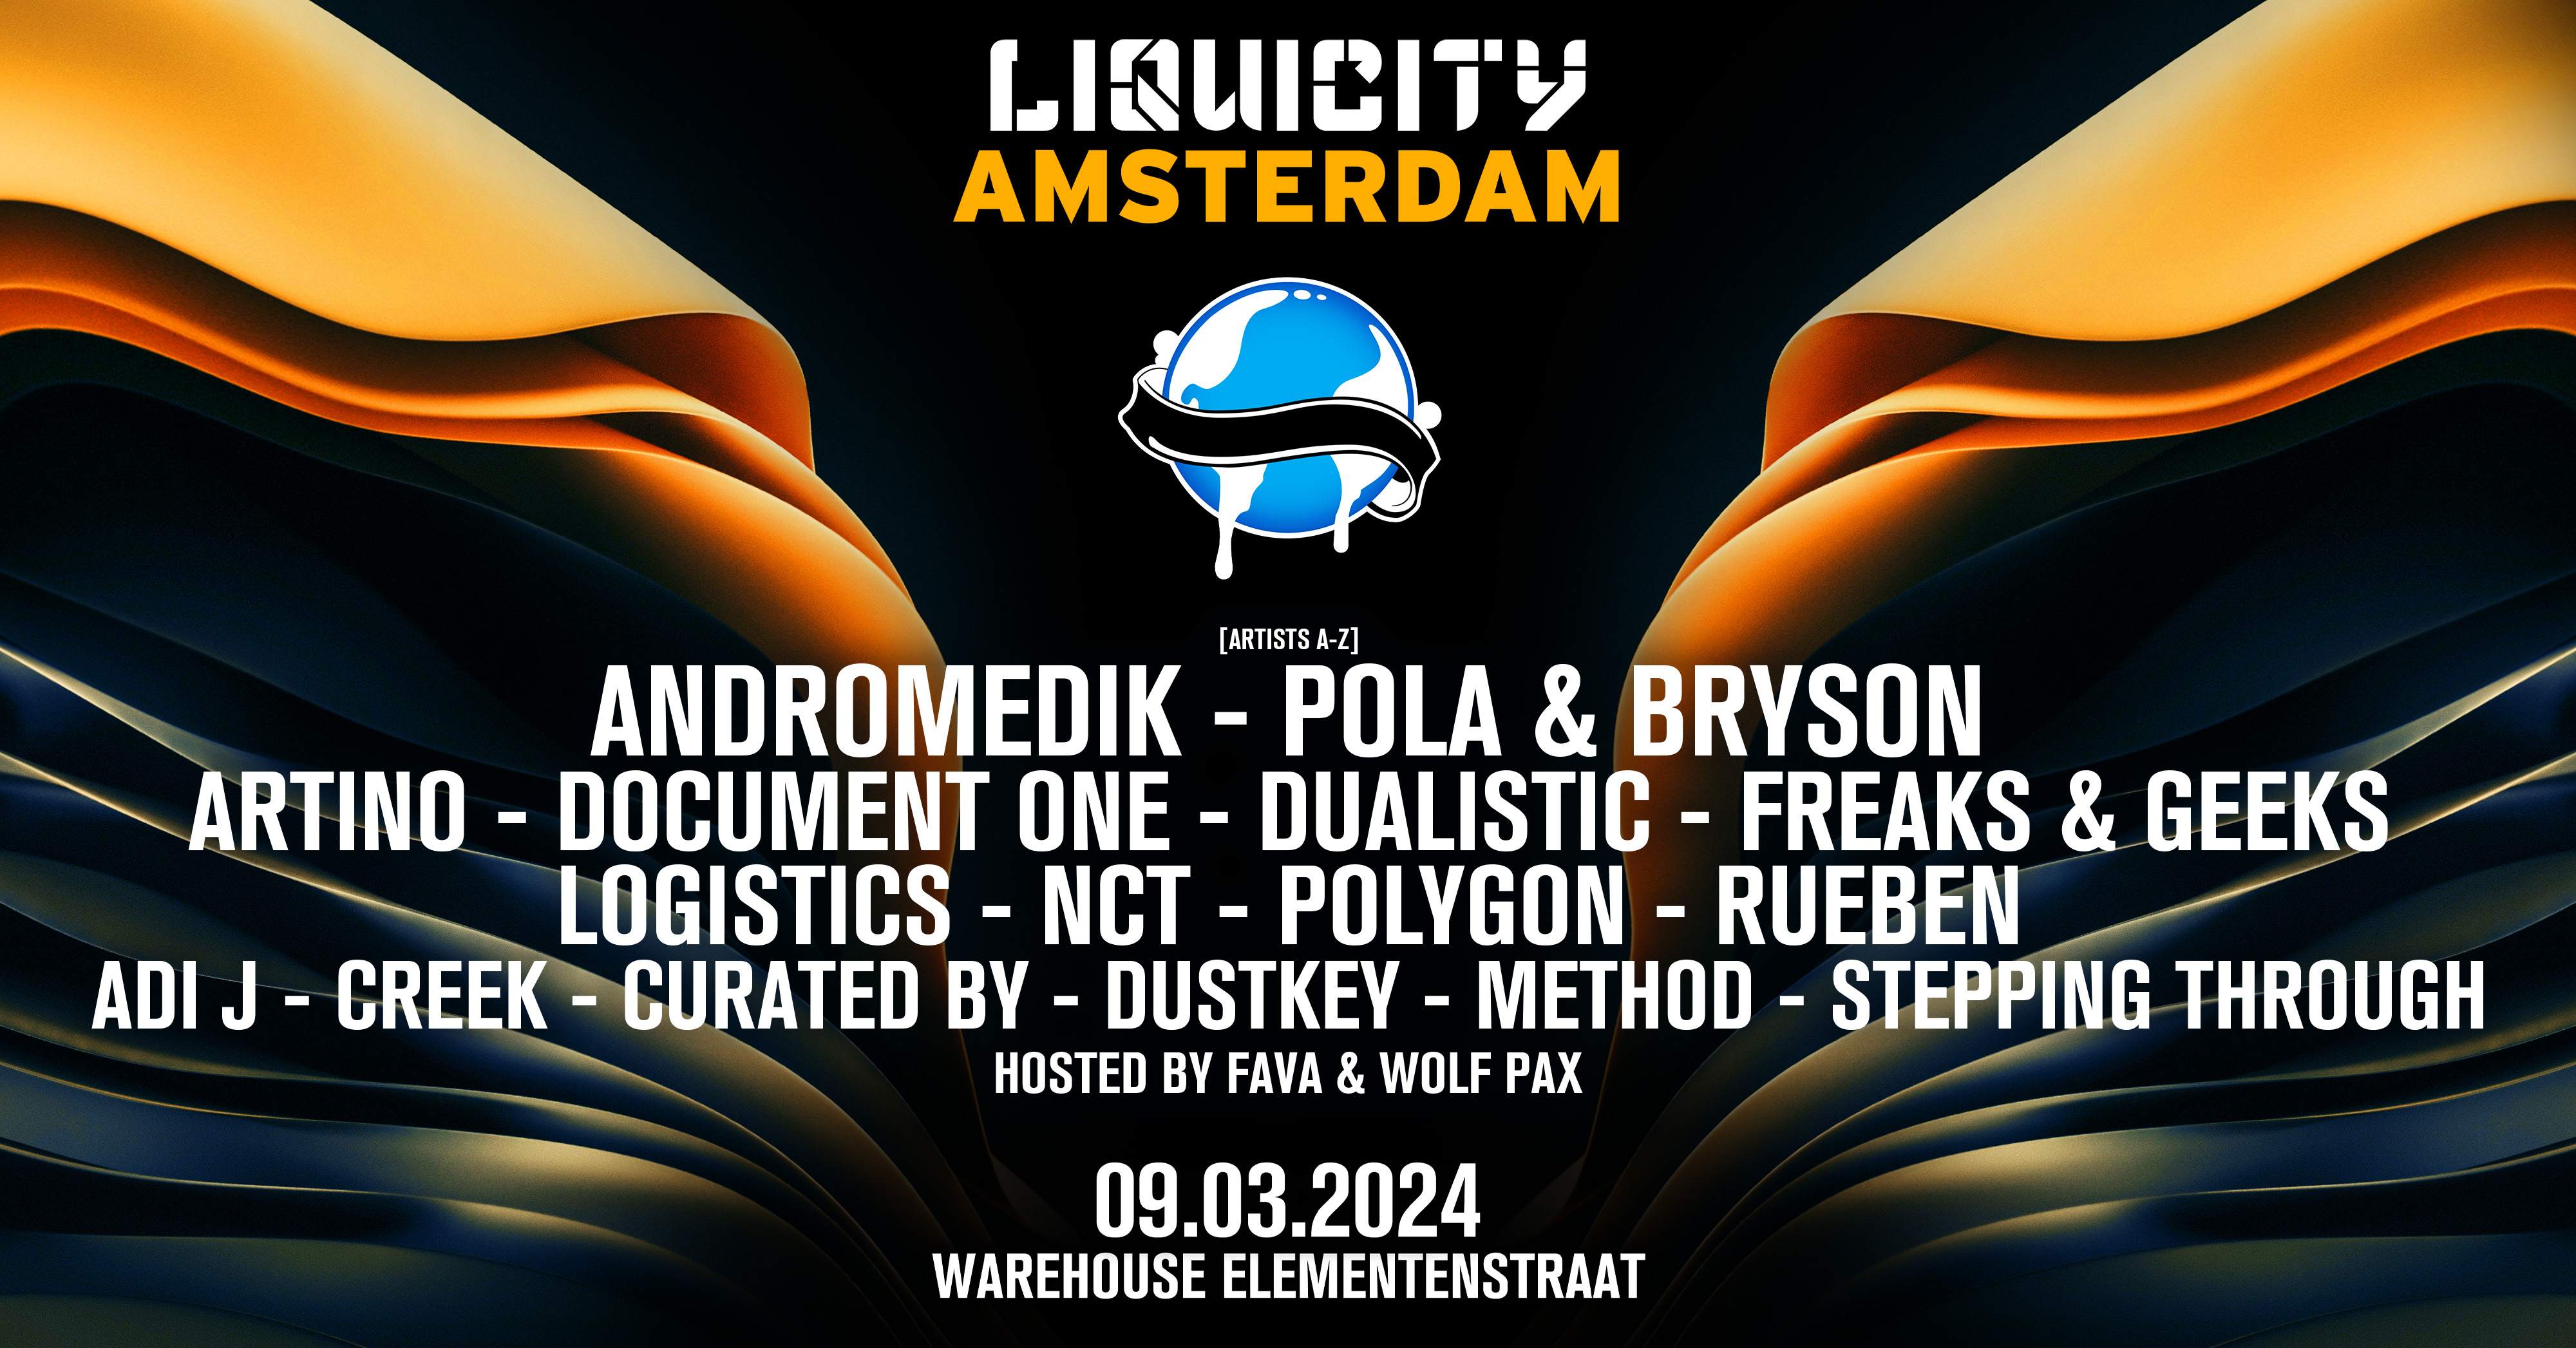 Liquicity Amsterdam 2024 - フライヤー表